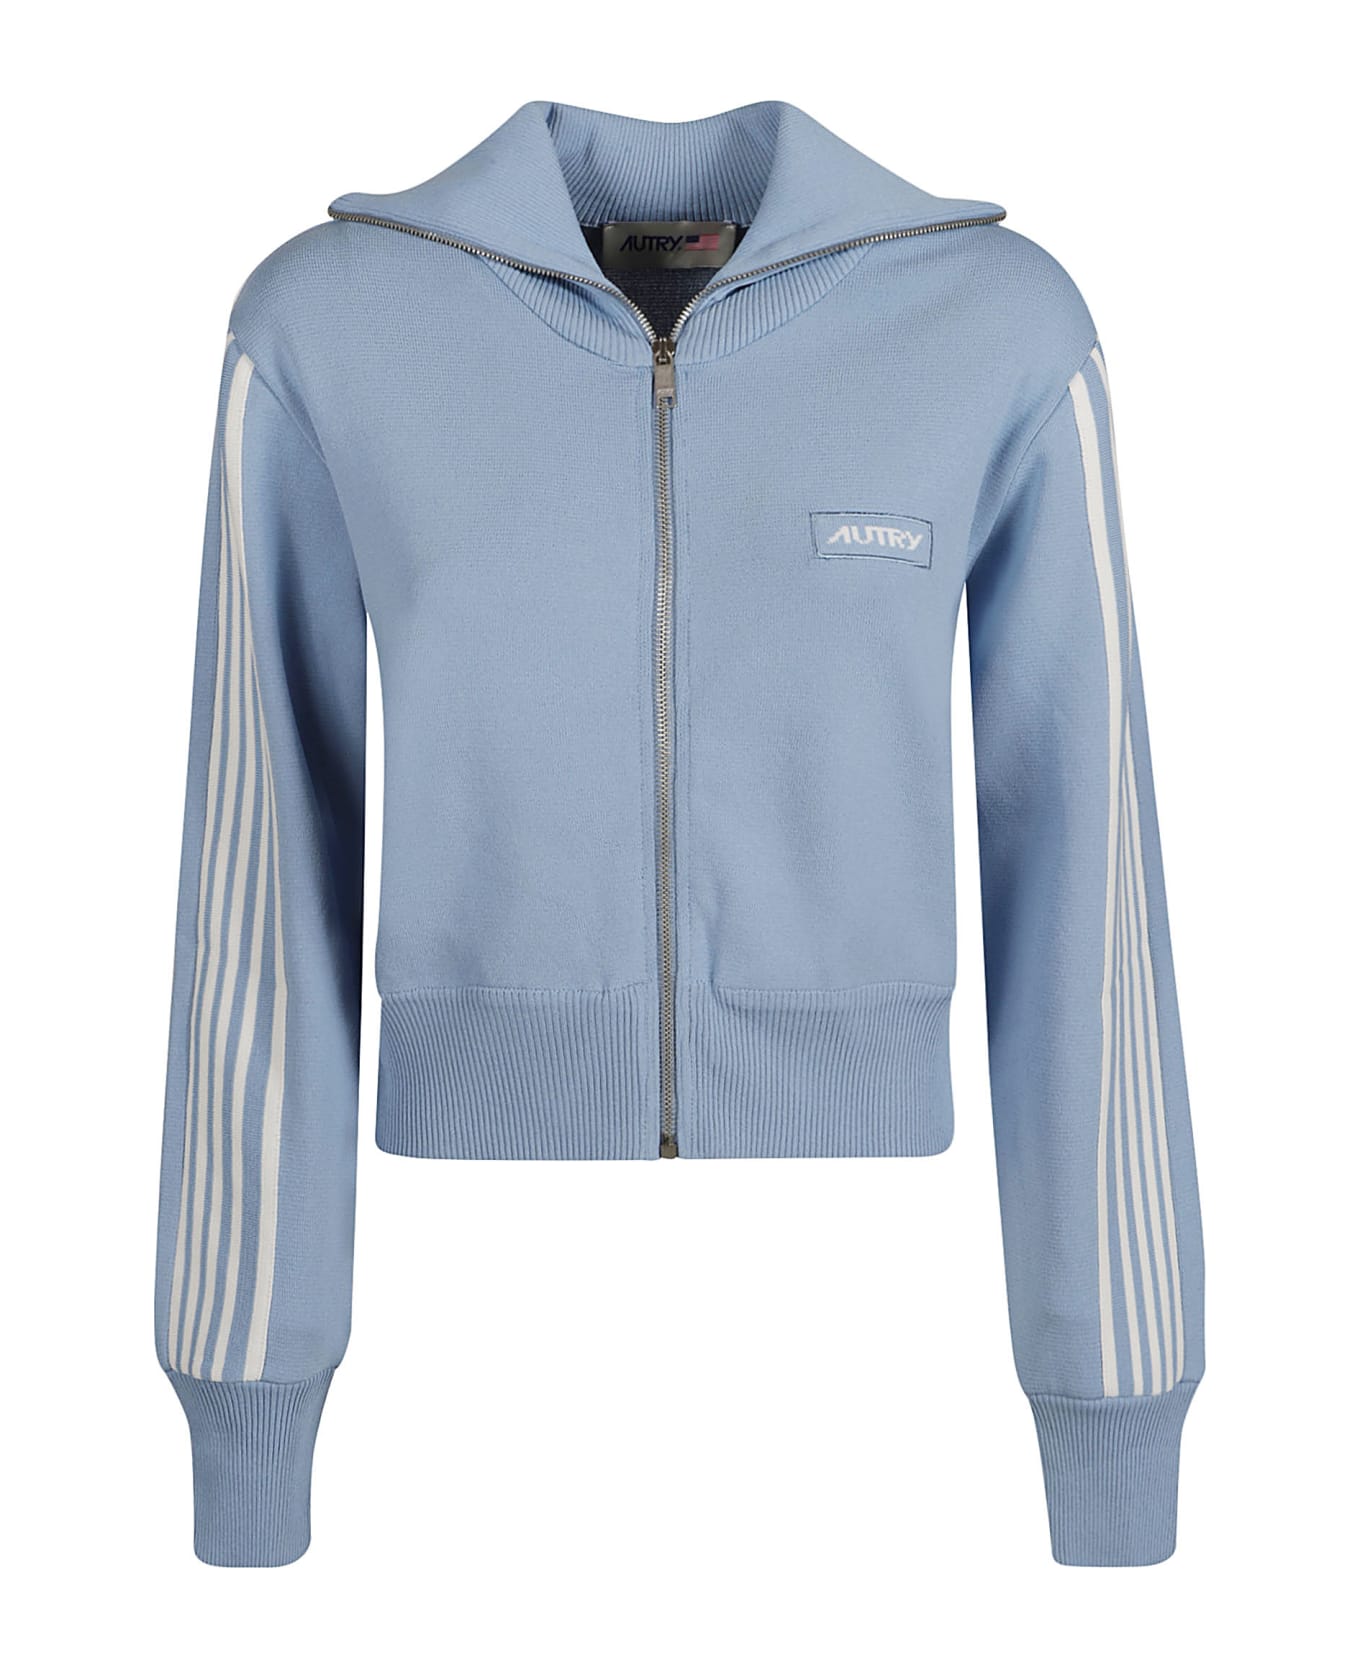 Autry Viscose Blend Zip Sweatshirt - Azure ジャケット